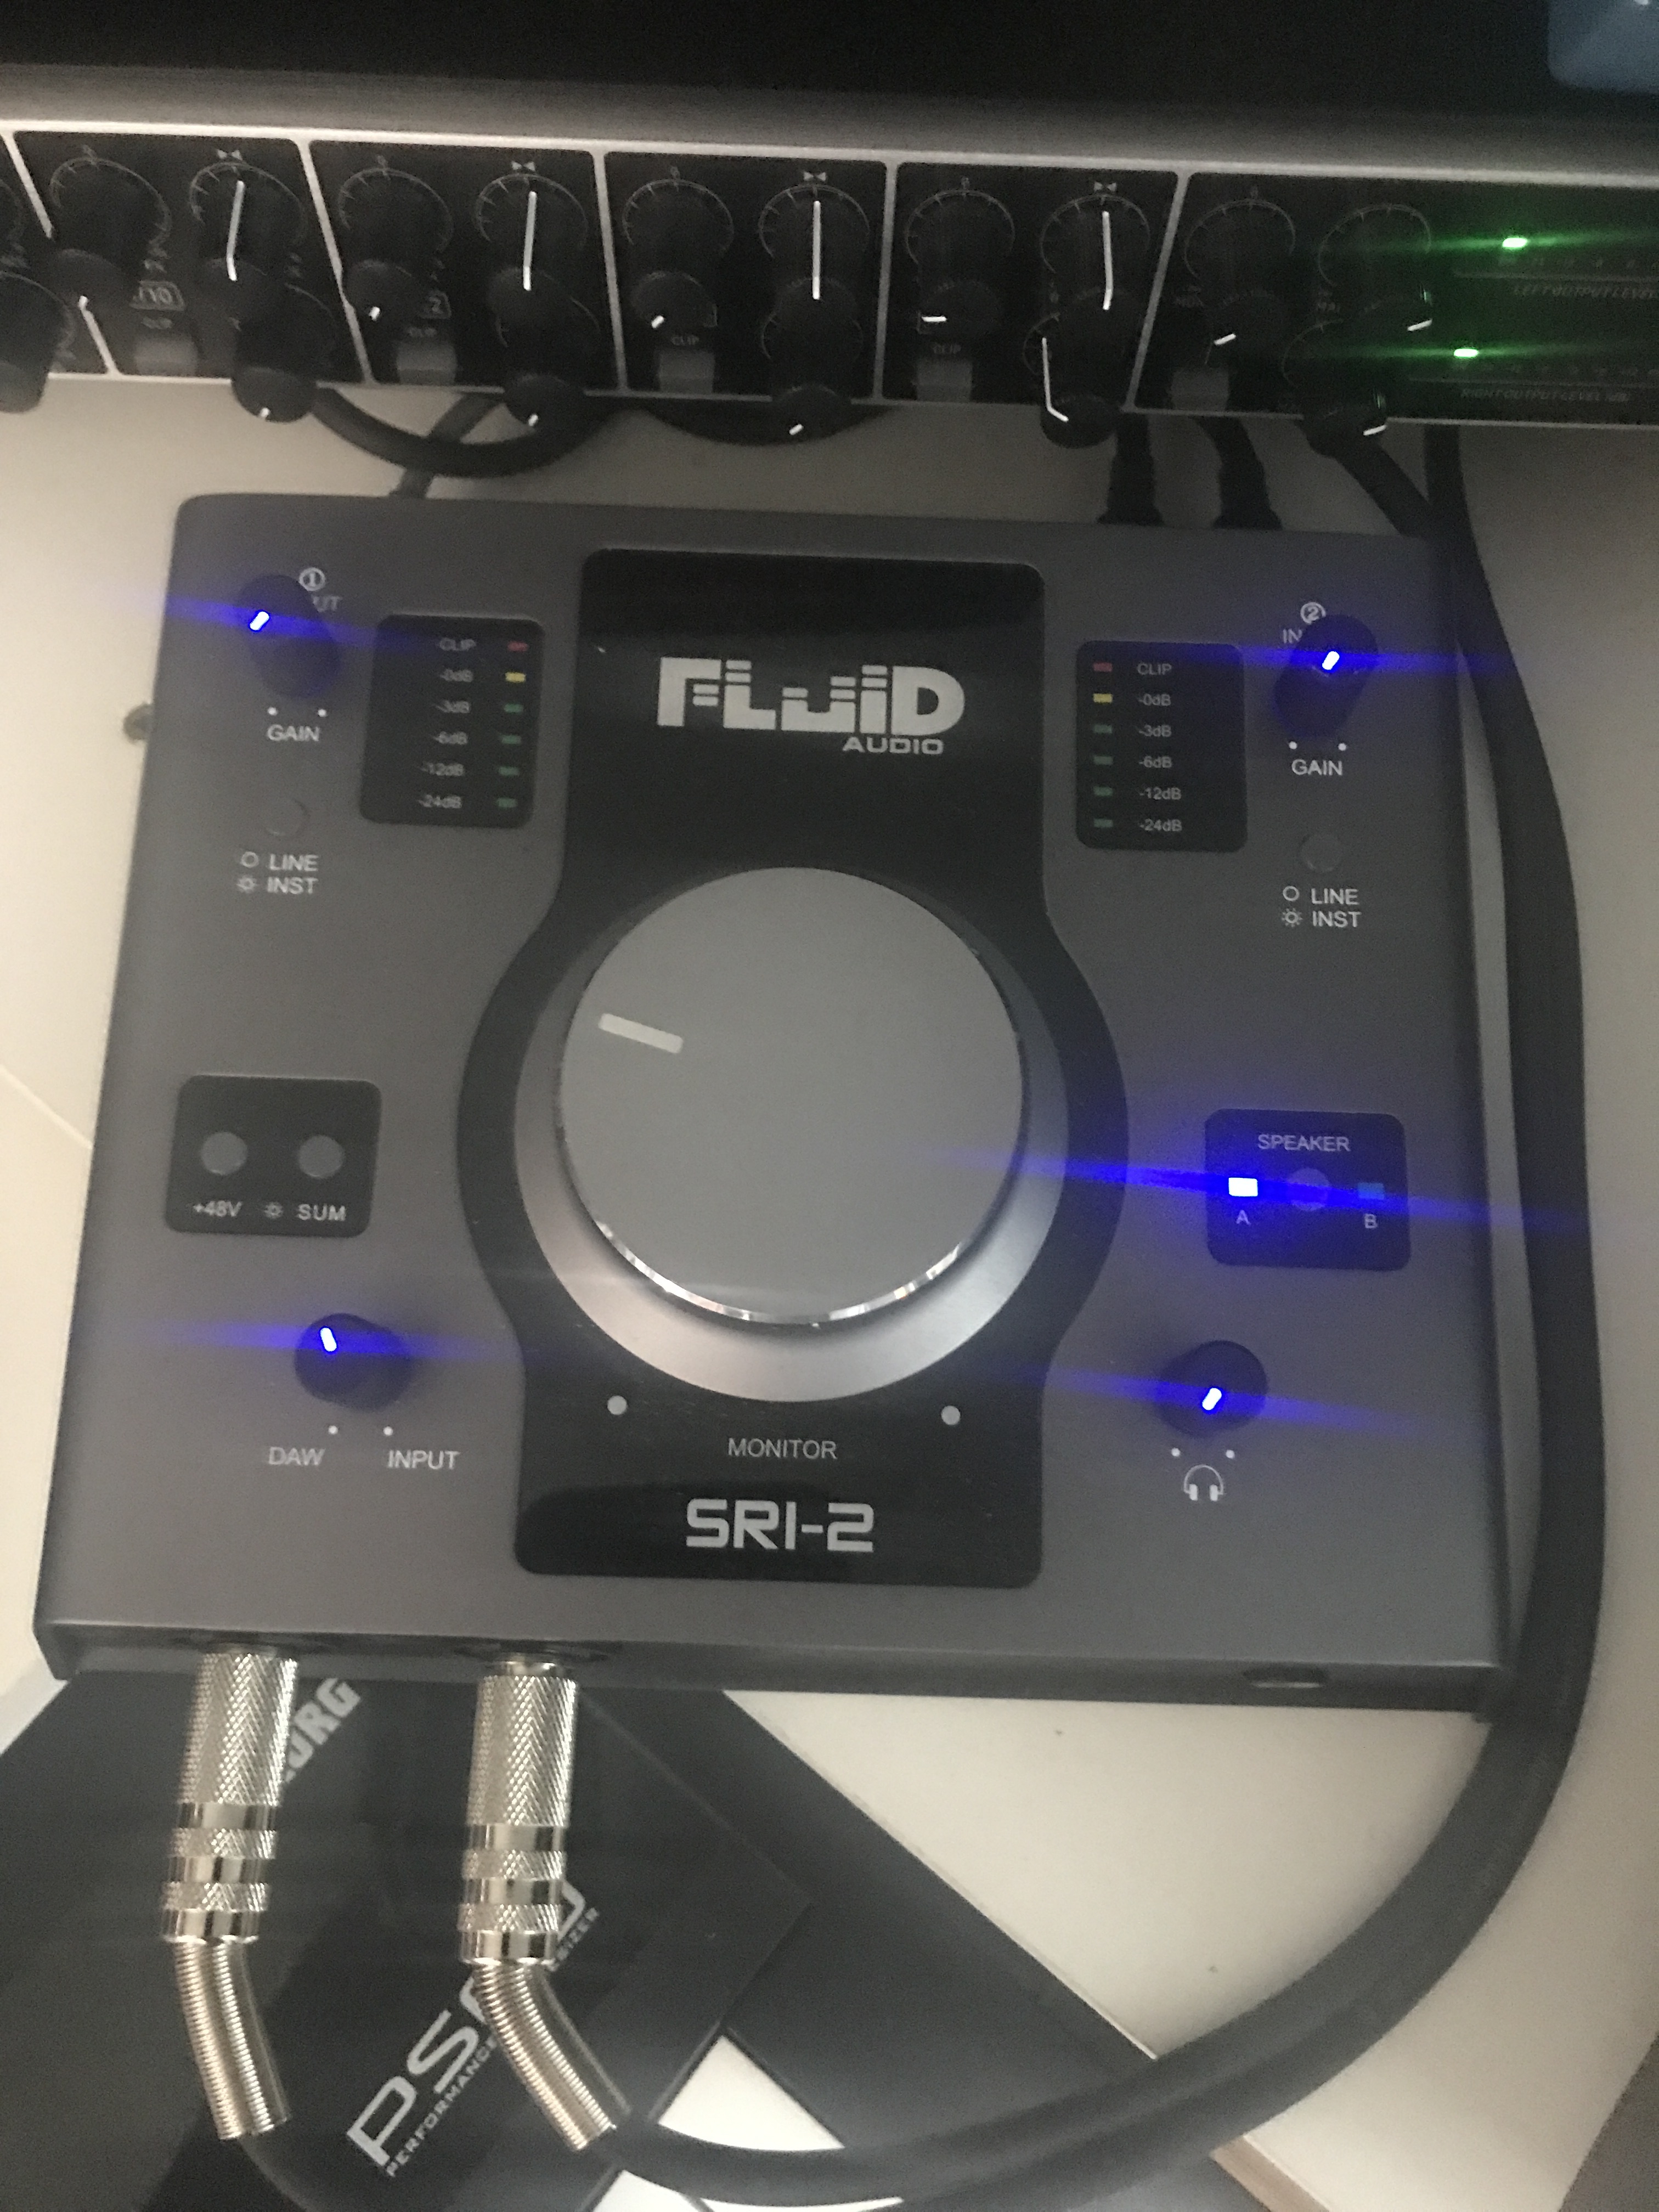 Fluid Audio SRI-2 USBオーディオインターフェース